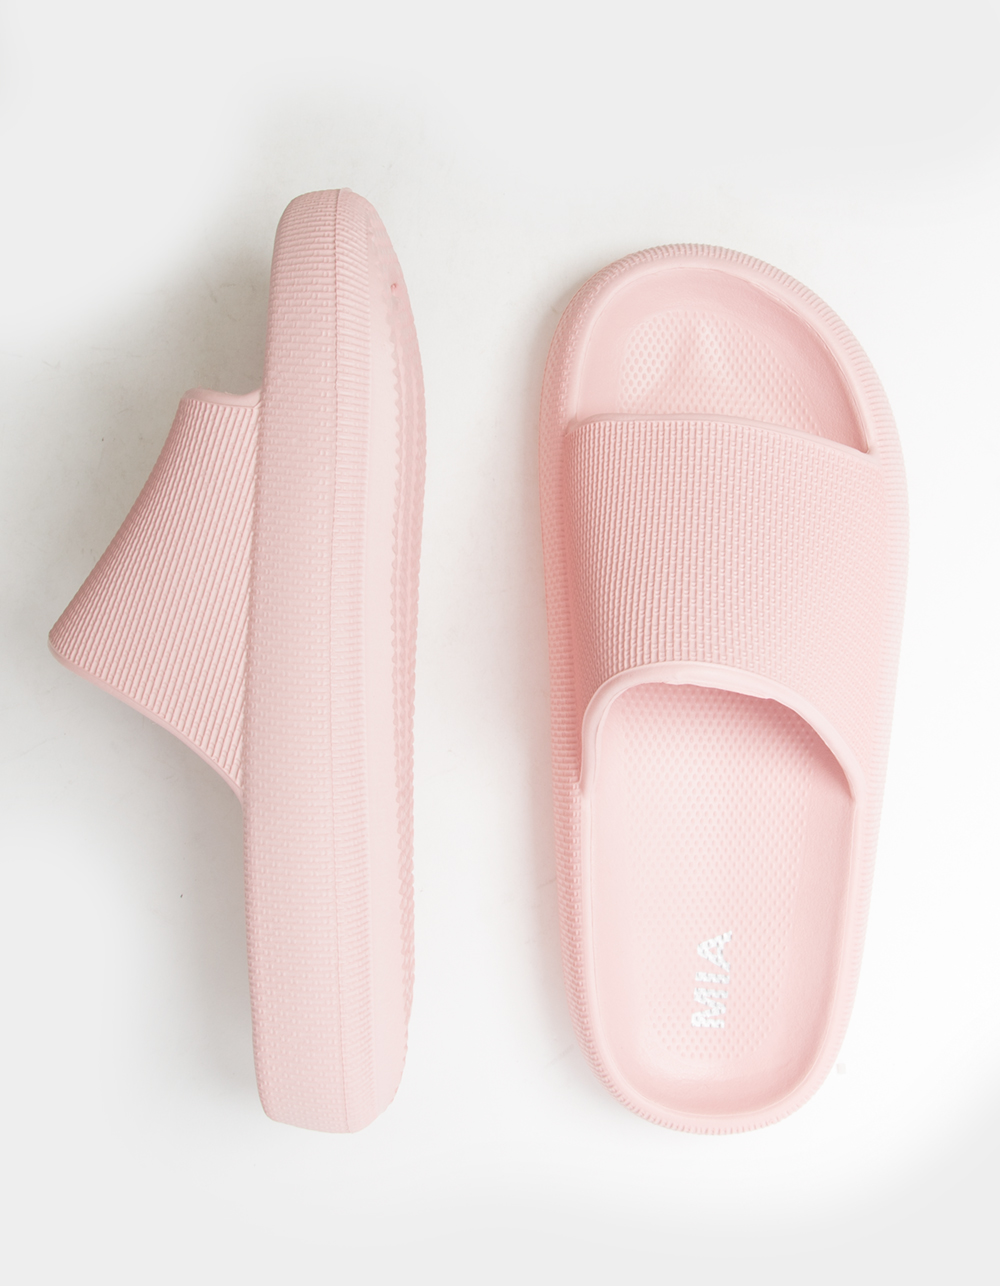 MIA Lexa Womens Slide Sandals - PINK | Tillys